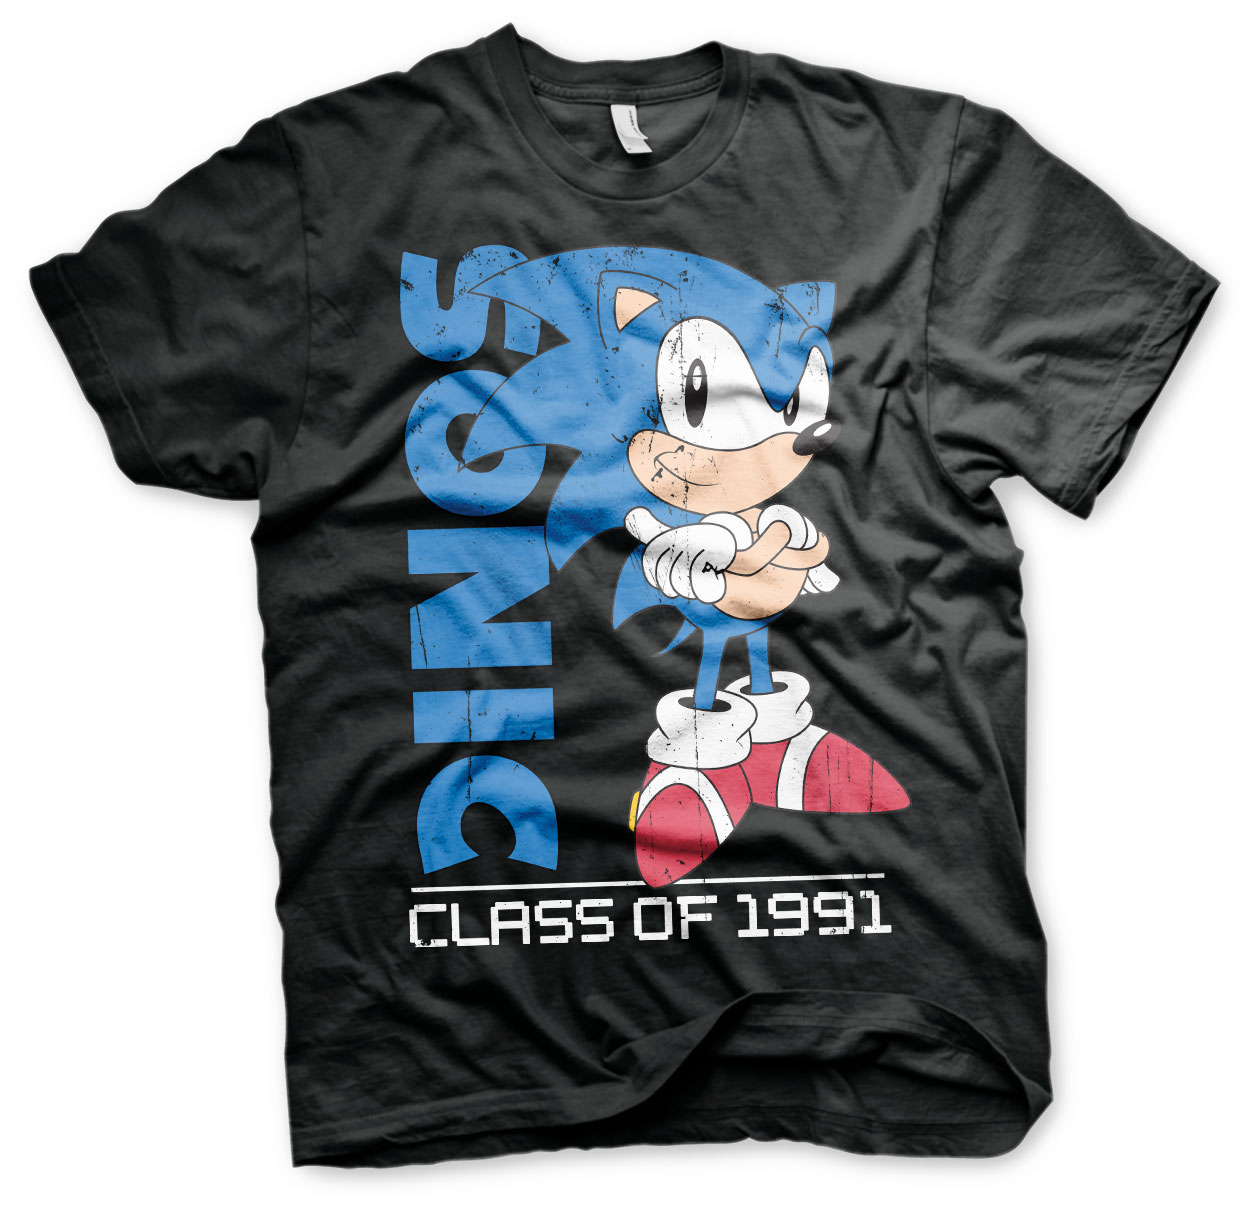 Design Original sous Licence Logoshirt Rétro Gris chiné Easyfit T-Shirt Sonic The Hedgehog Jeu Vidéo 1991